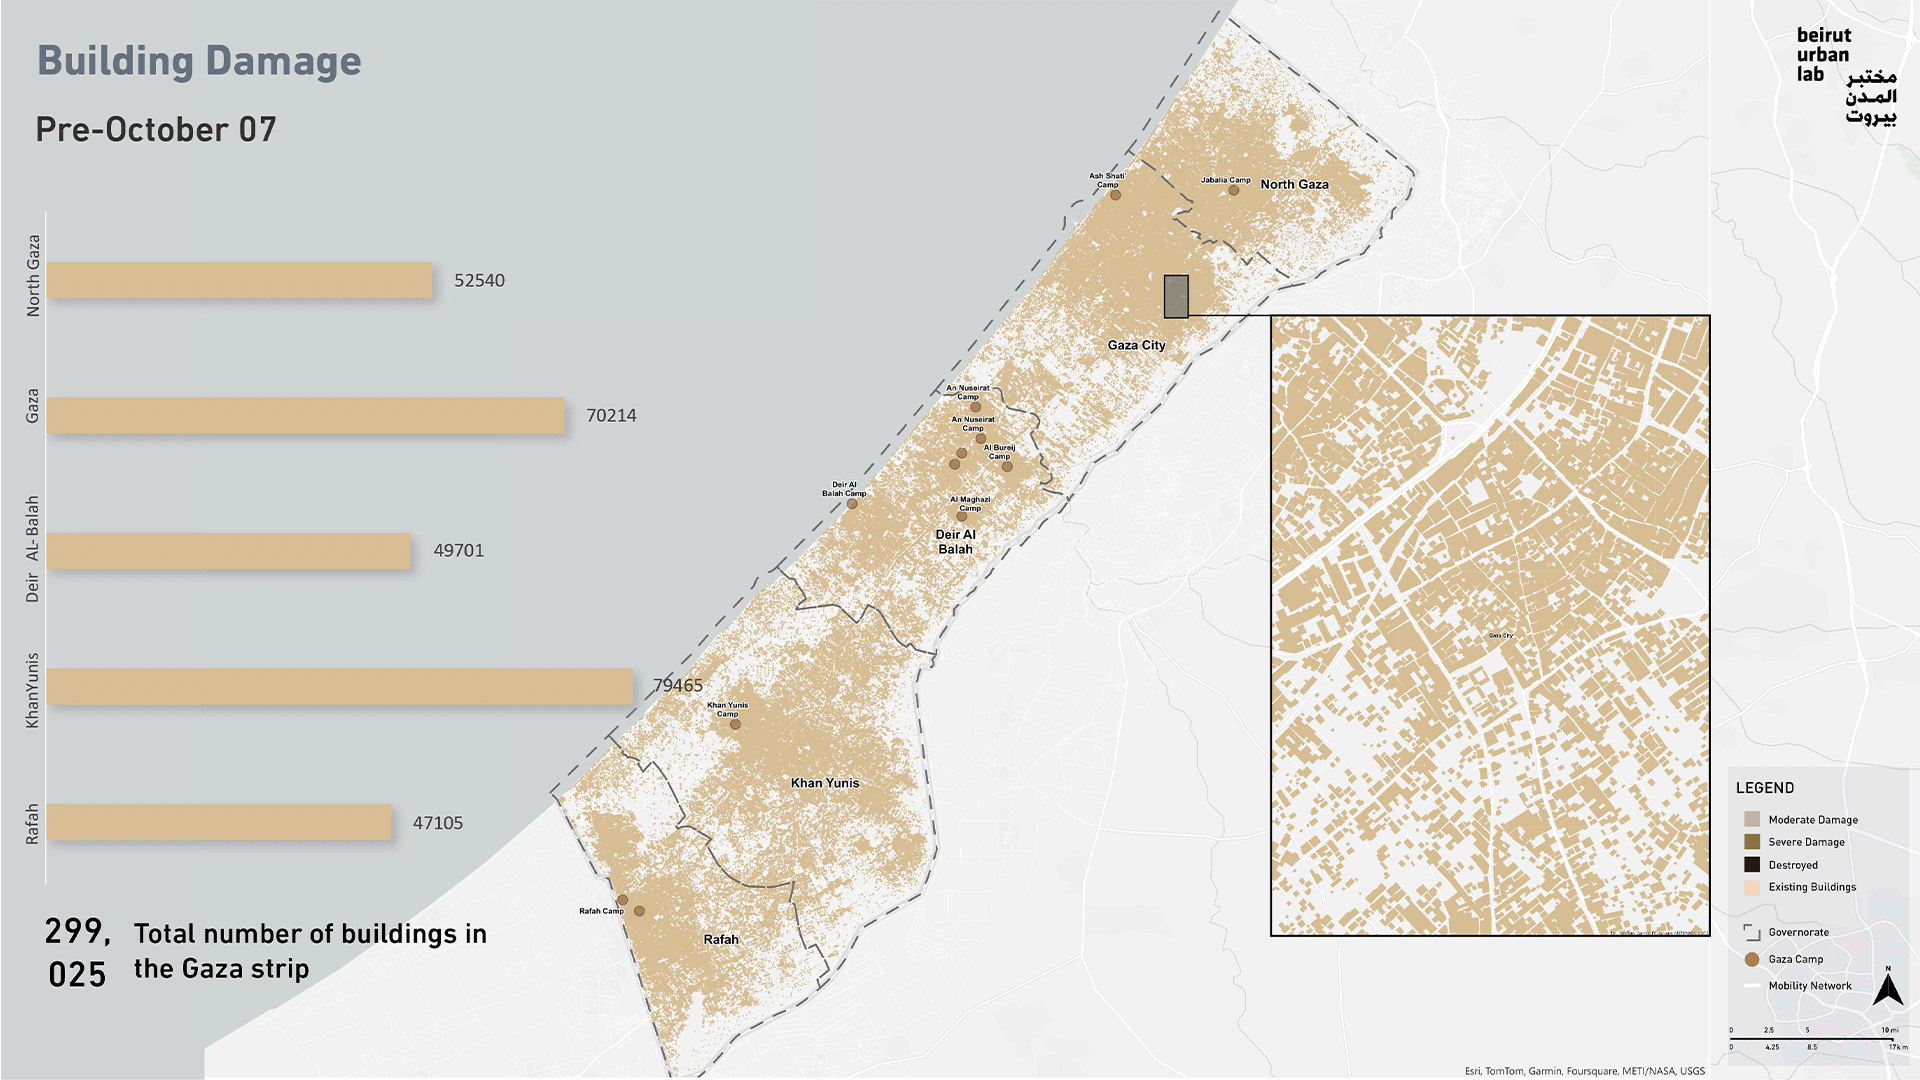 الأضرار اللاحقة بالمباني في غزة. المصدر: مختبر المدن في بيروت بالاستناد إلى بيانات من يونوسات UNOSAT